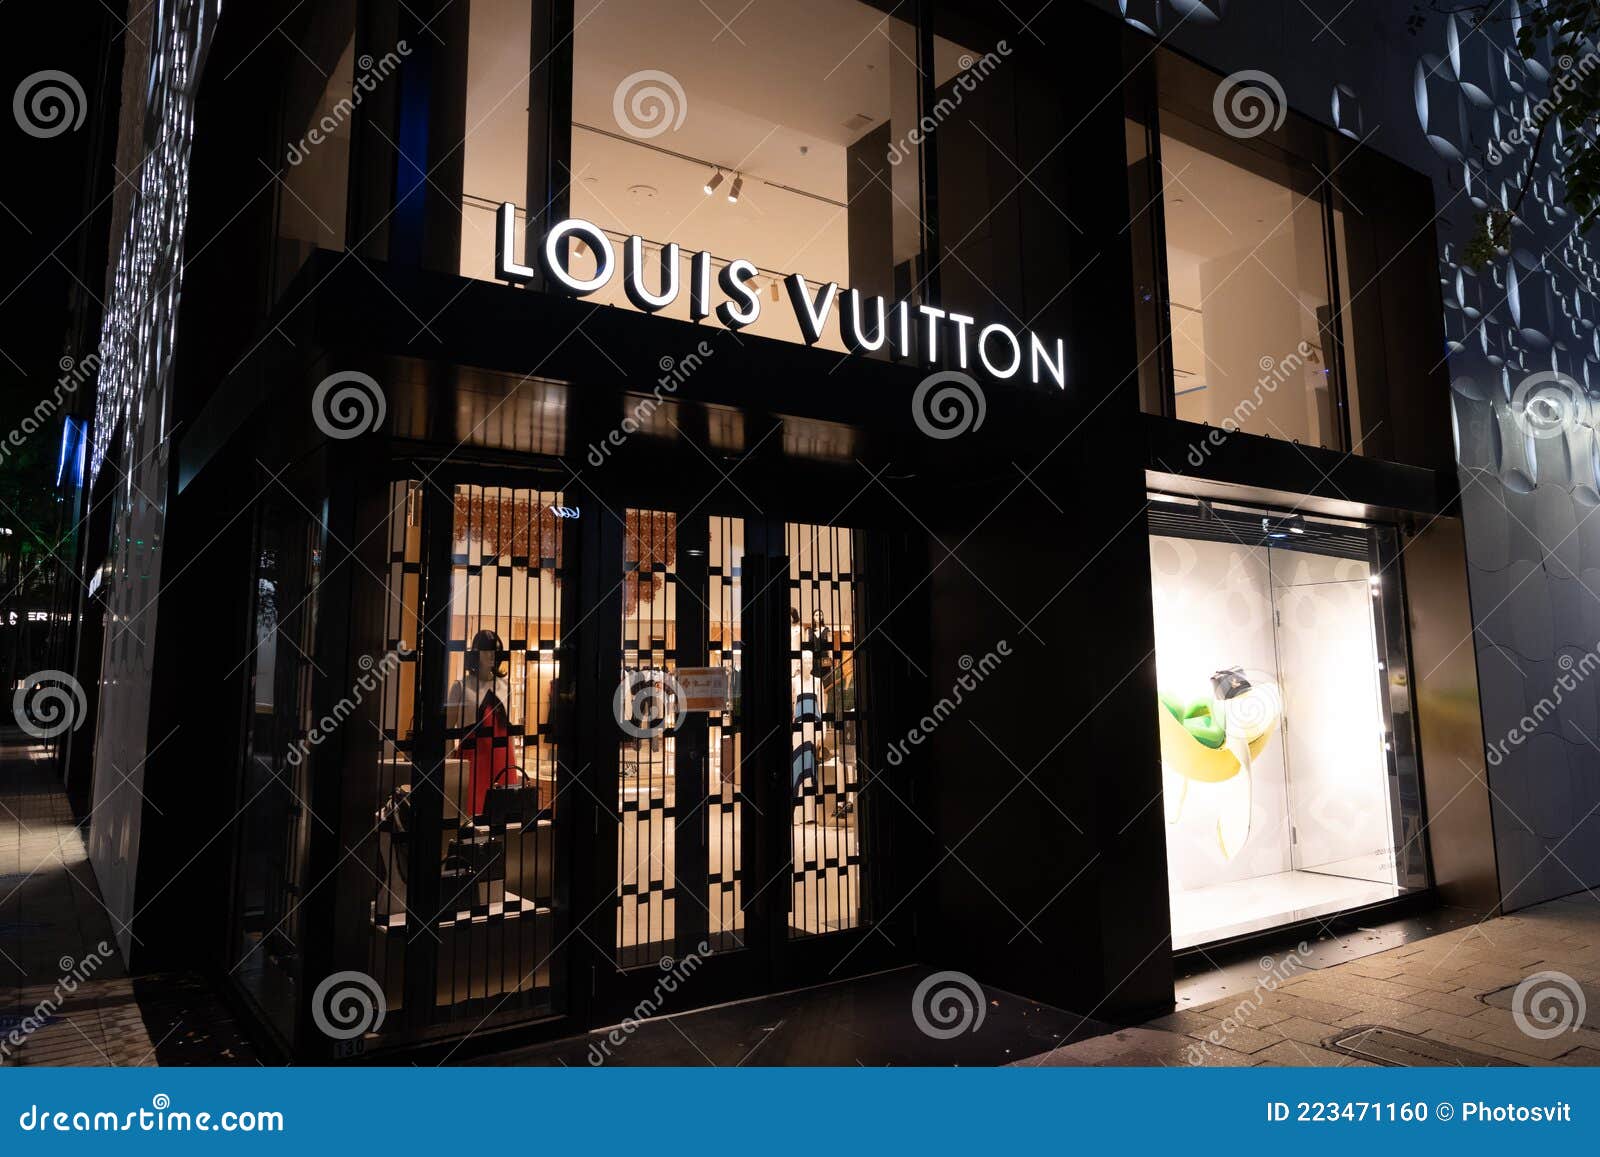 Miami, USA - March 20, 2021: Louis Vuitton Name Lit Up Over Shopfront ...